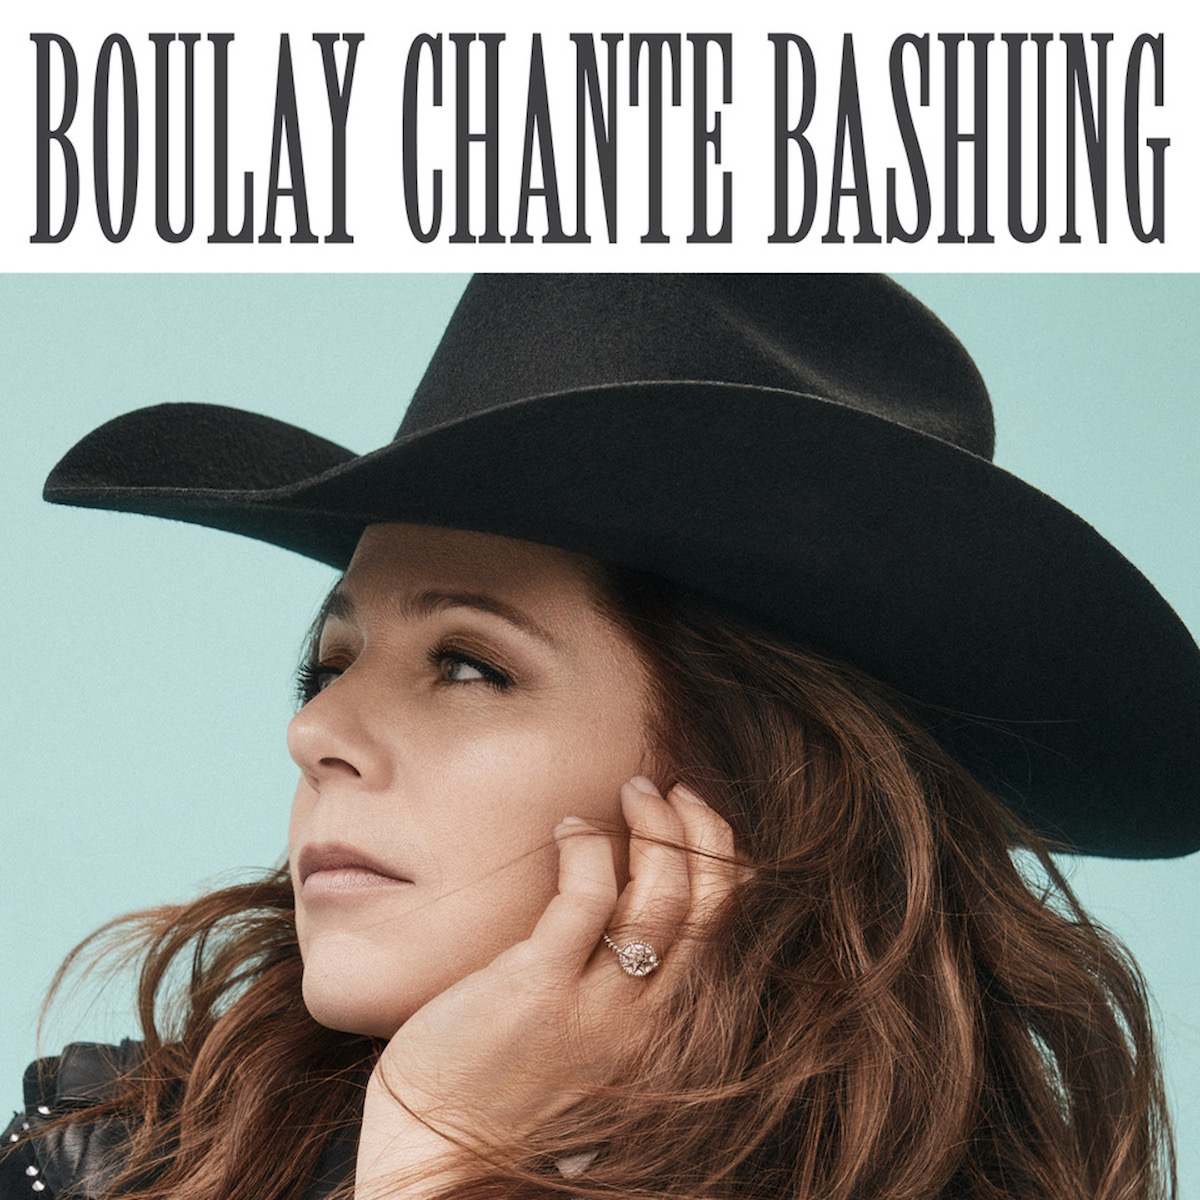 ISABELLE BOULAY: Son nouvel album Les chevaux du plaisir (Boulay chante Bashung) disponible le 17 mars